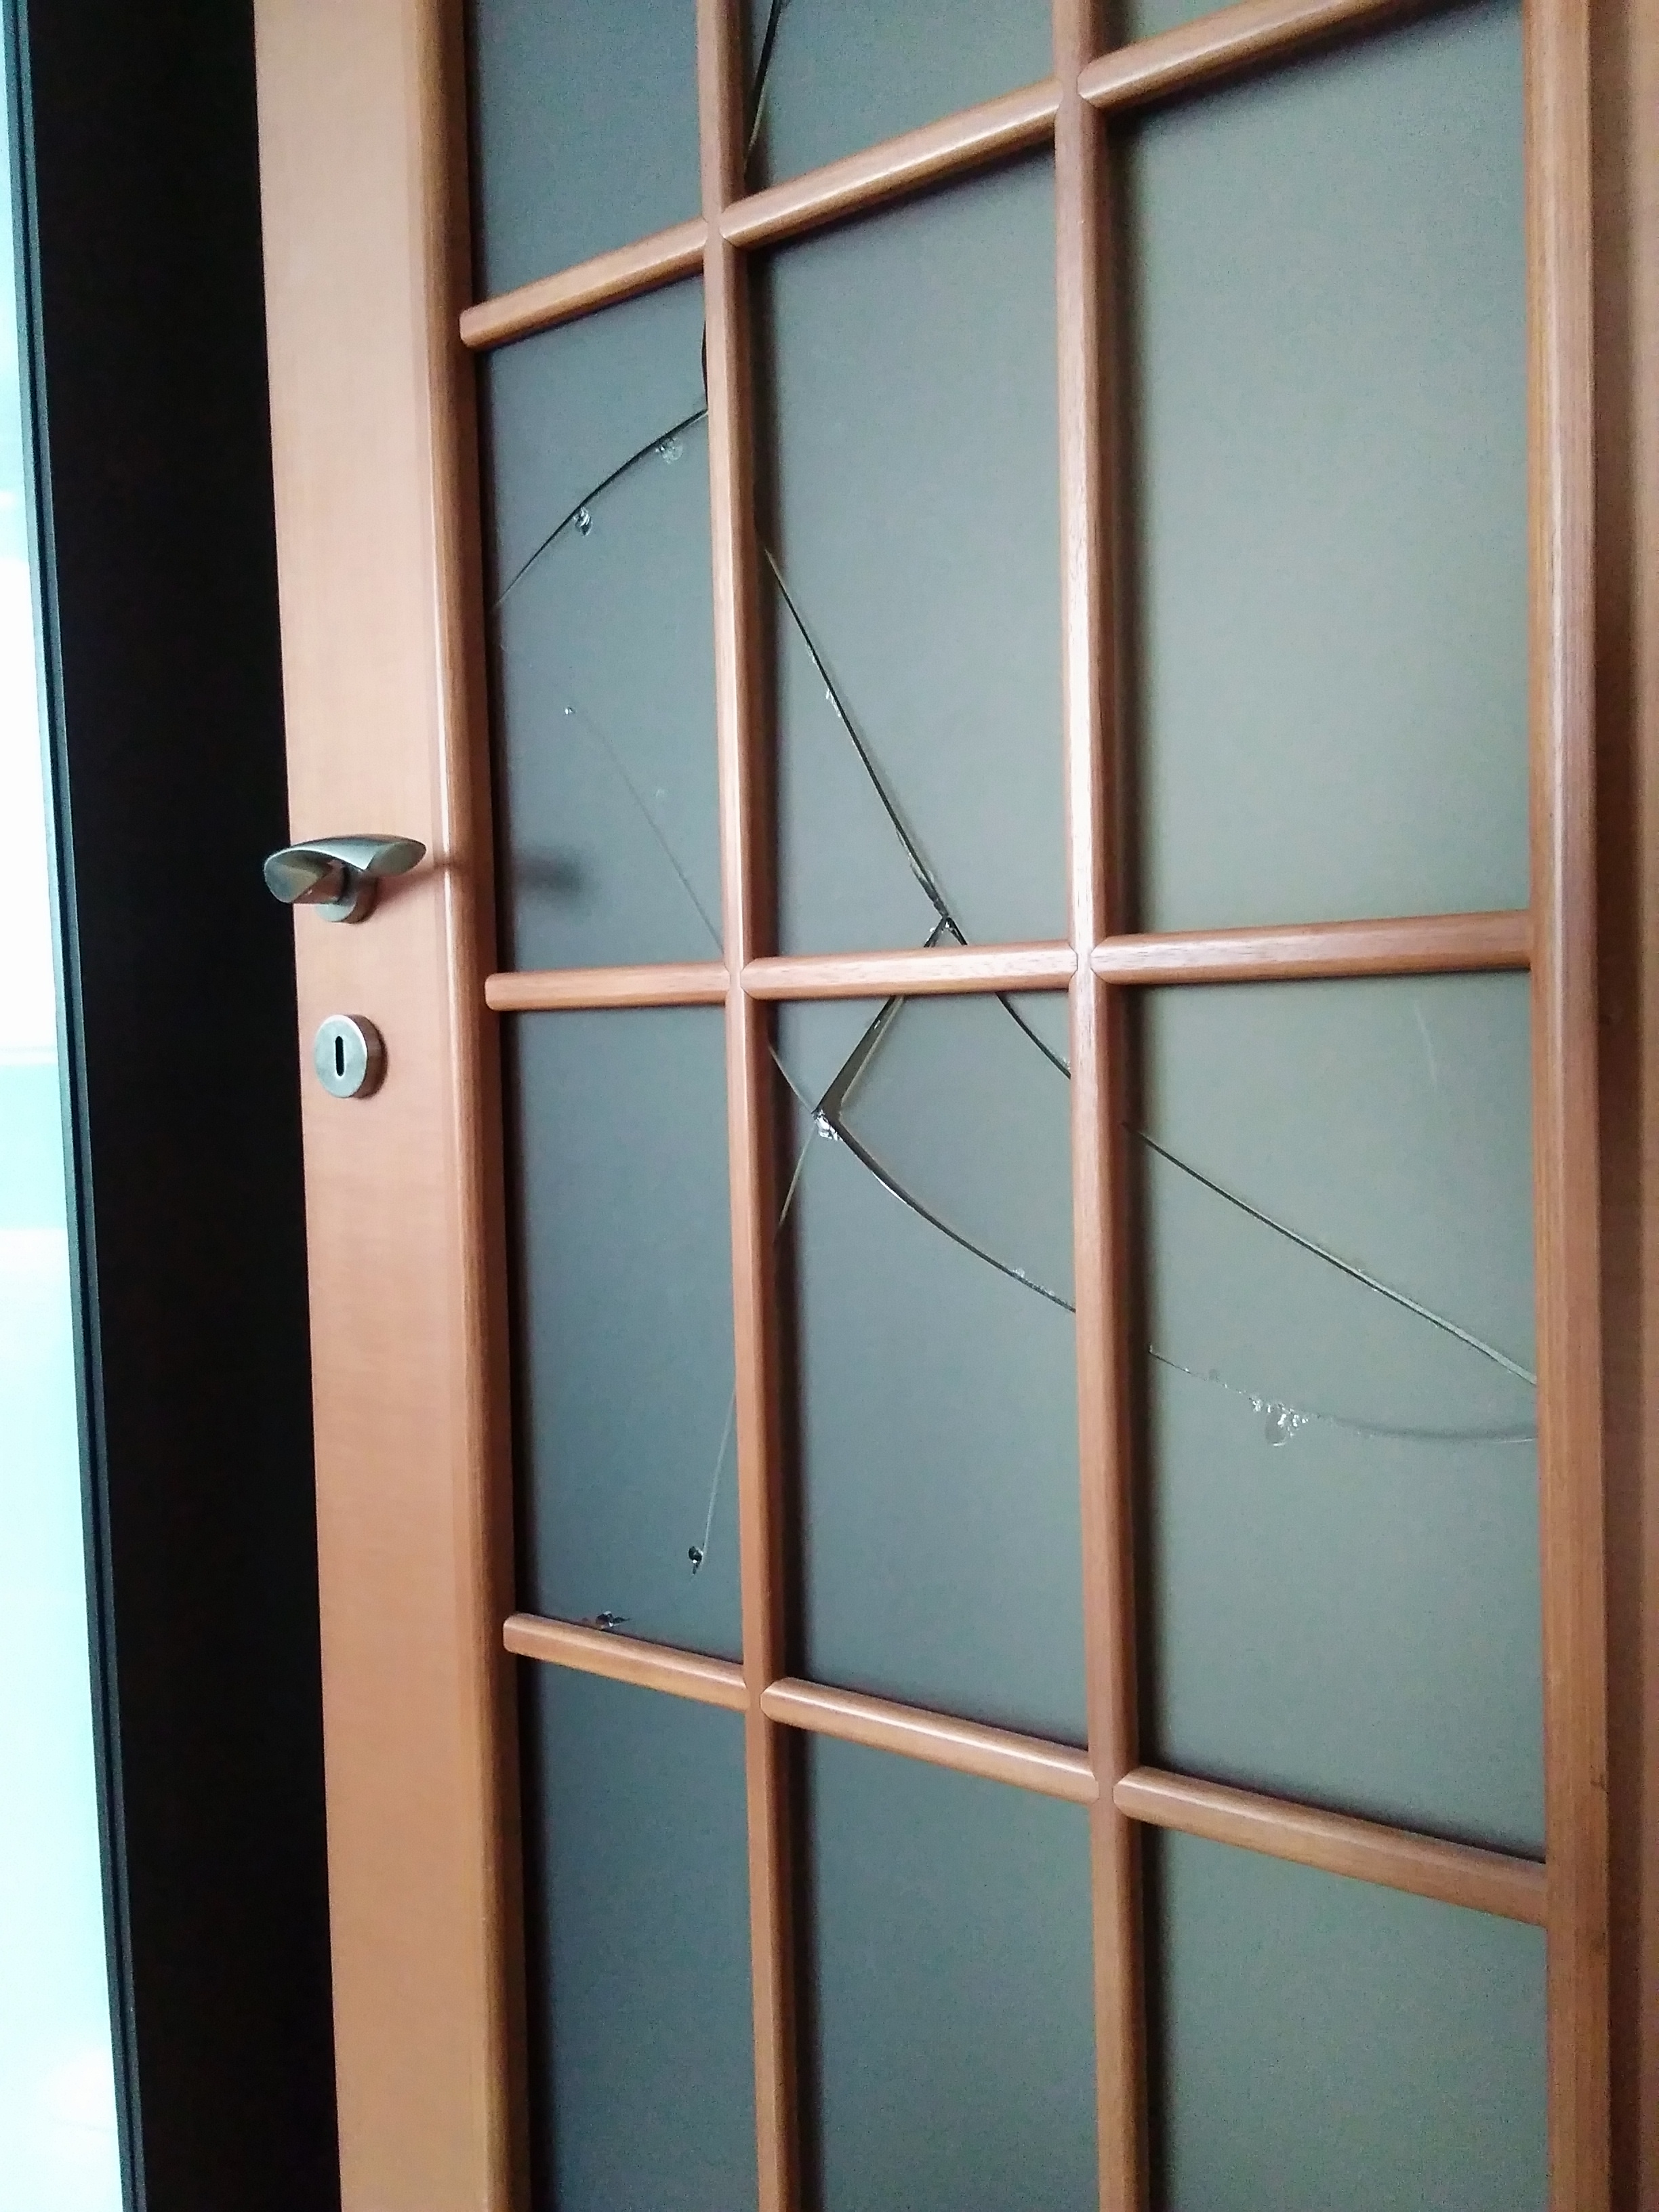 Межкомнатные двери со стеклом, которые можно отремонтировать Альтернатива стеклу Инструменты и этапы ремонта Разборка двери для замены стекла